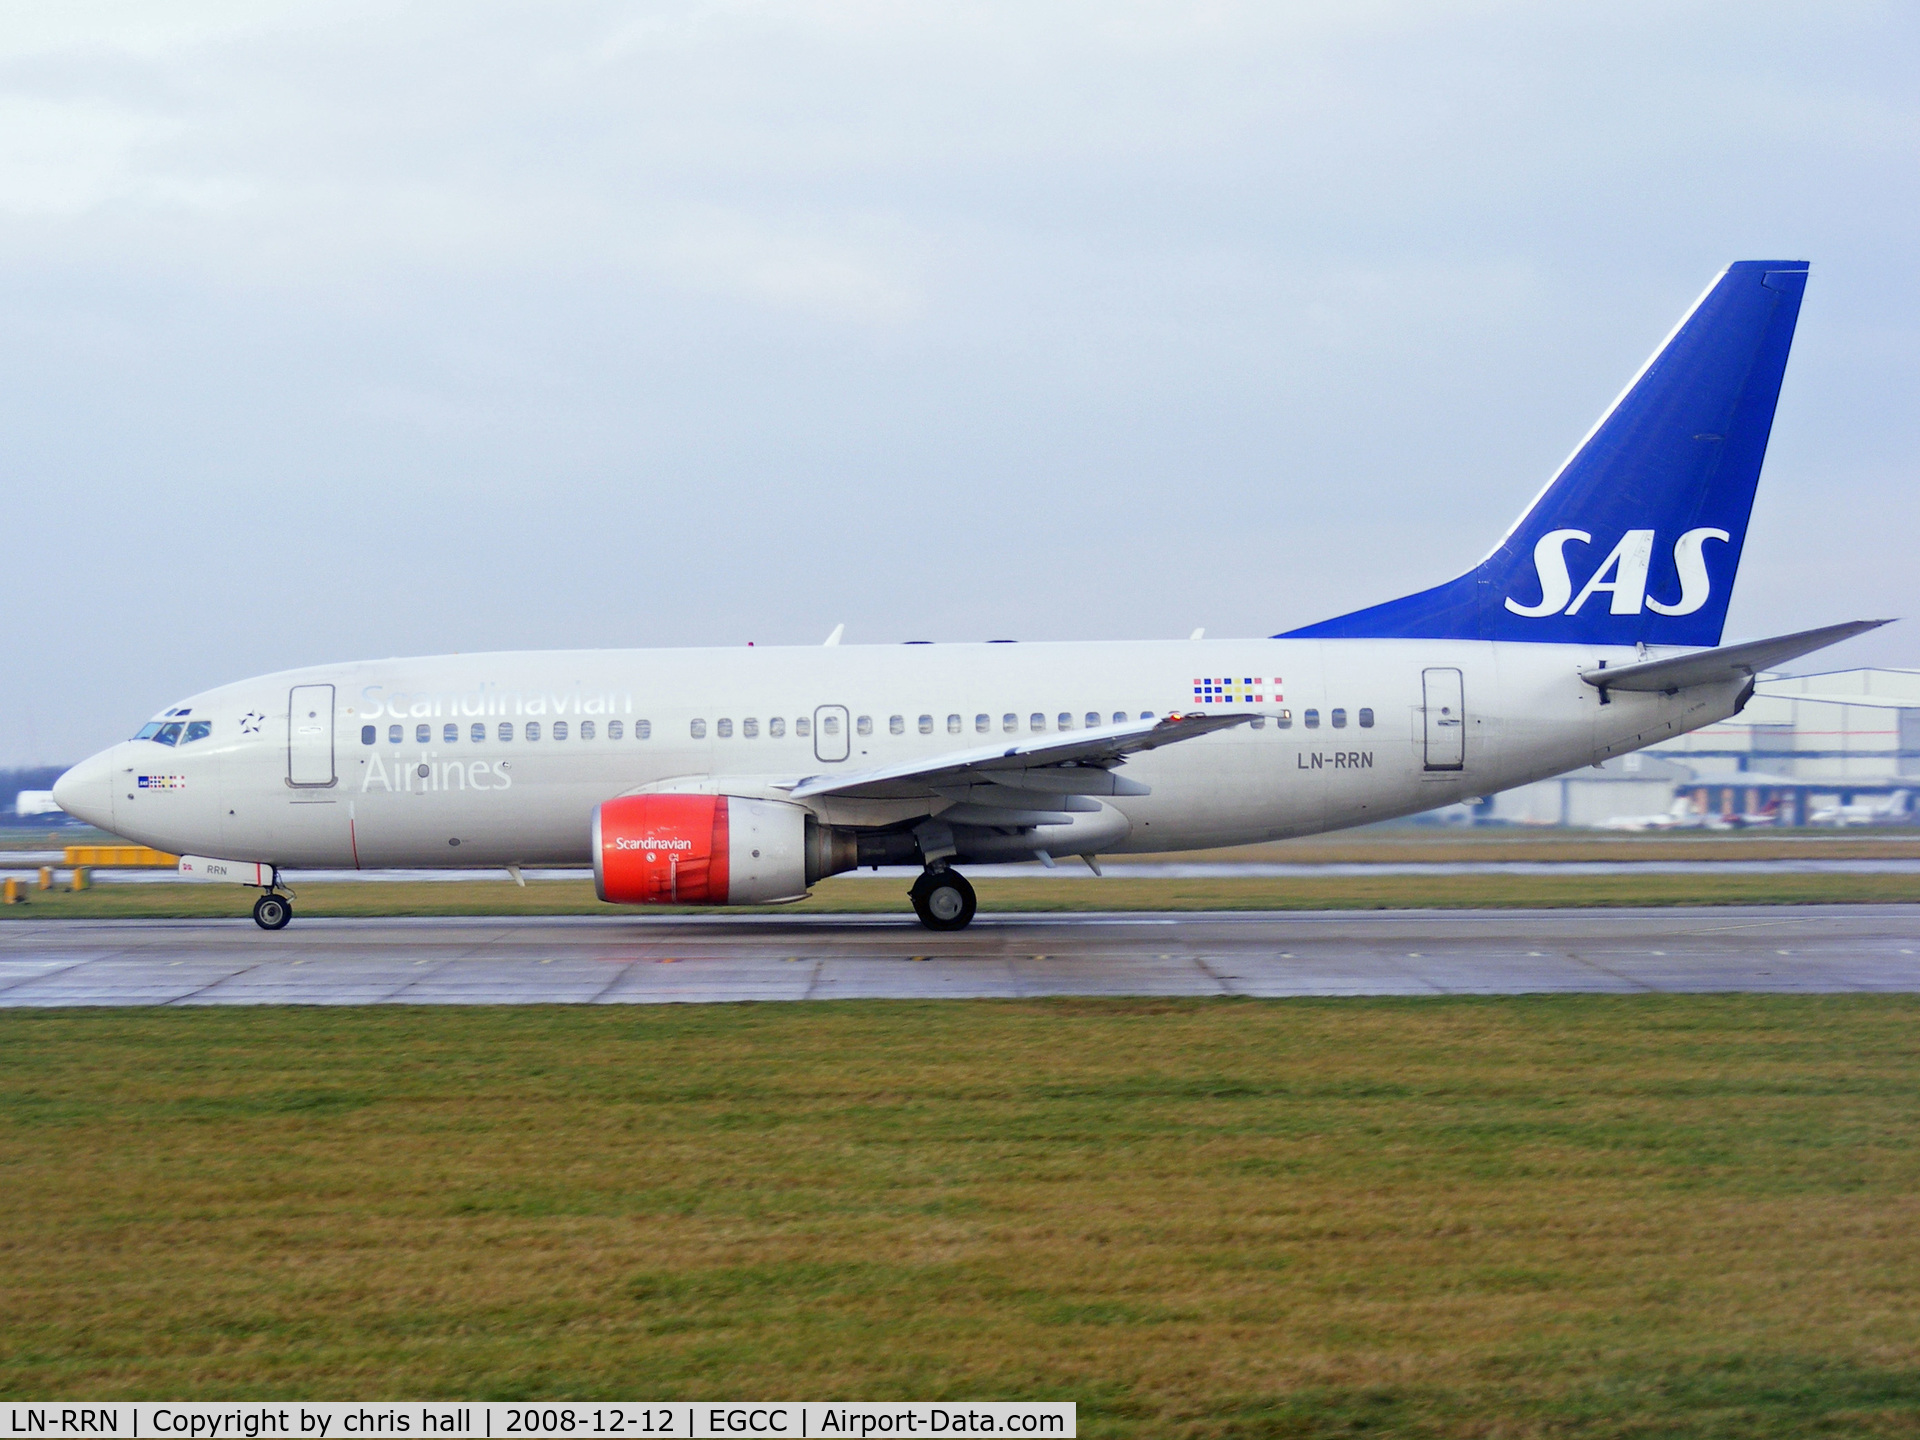 LN-RRN, 1999 Boeing 737-783 C/N 30191, Scandinavian